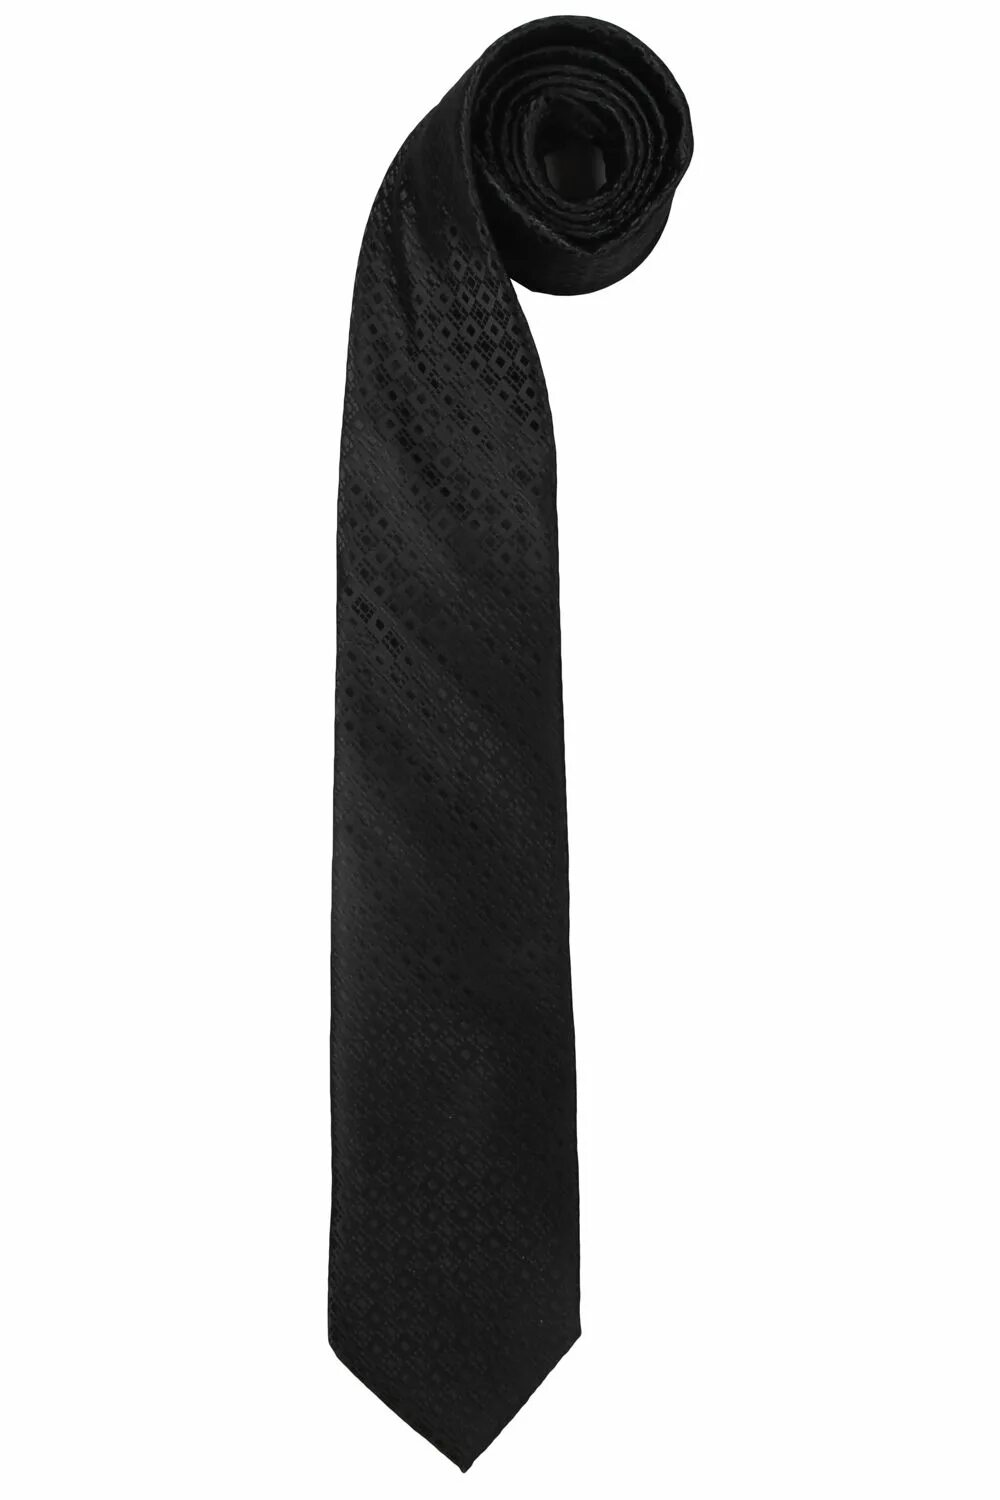 Черный галстук. Галстук женский черный. Тонкий черный галстук. Черный галстук для мальчика. Белый галстук у черного кота 7 букв